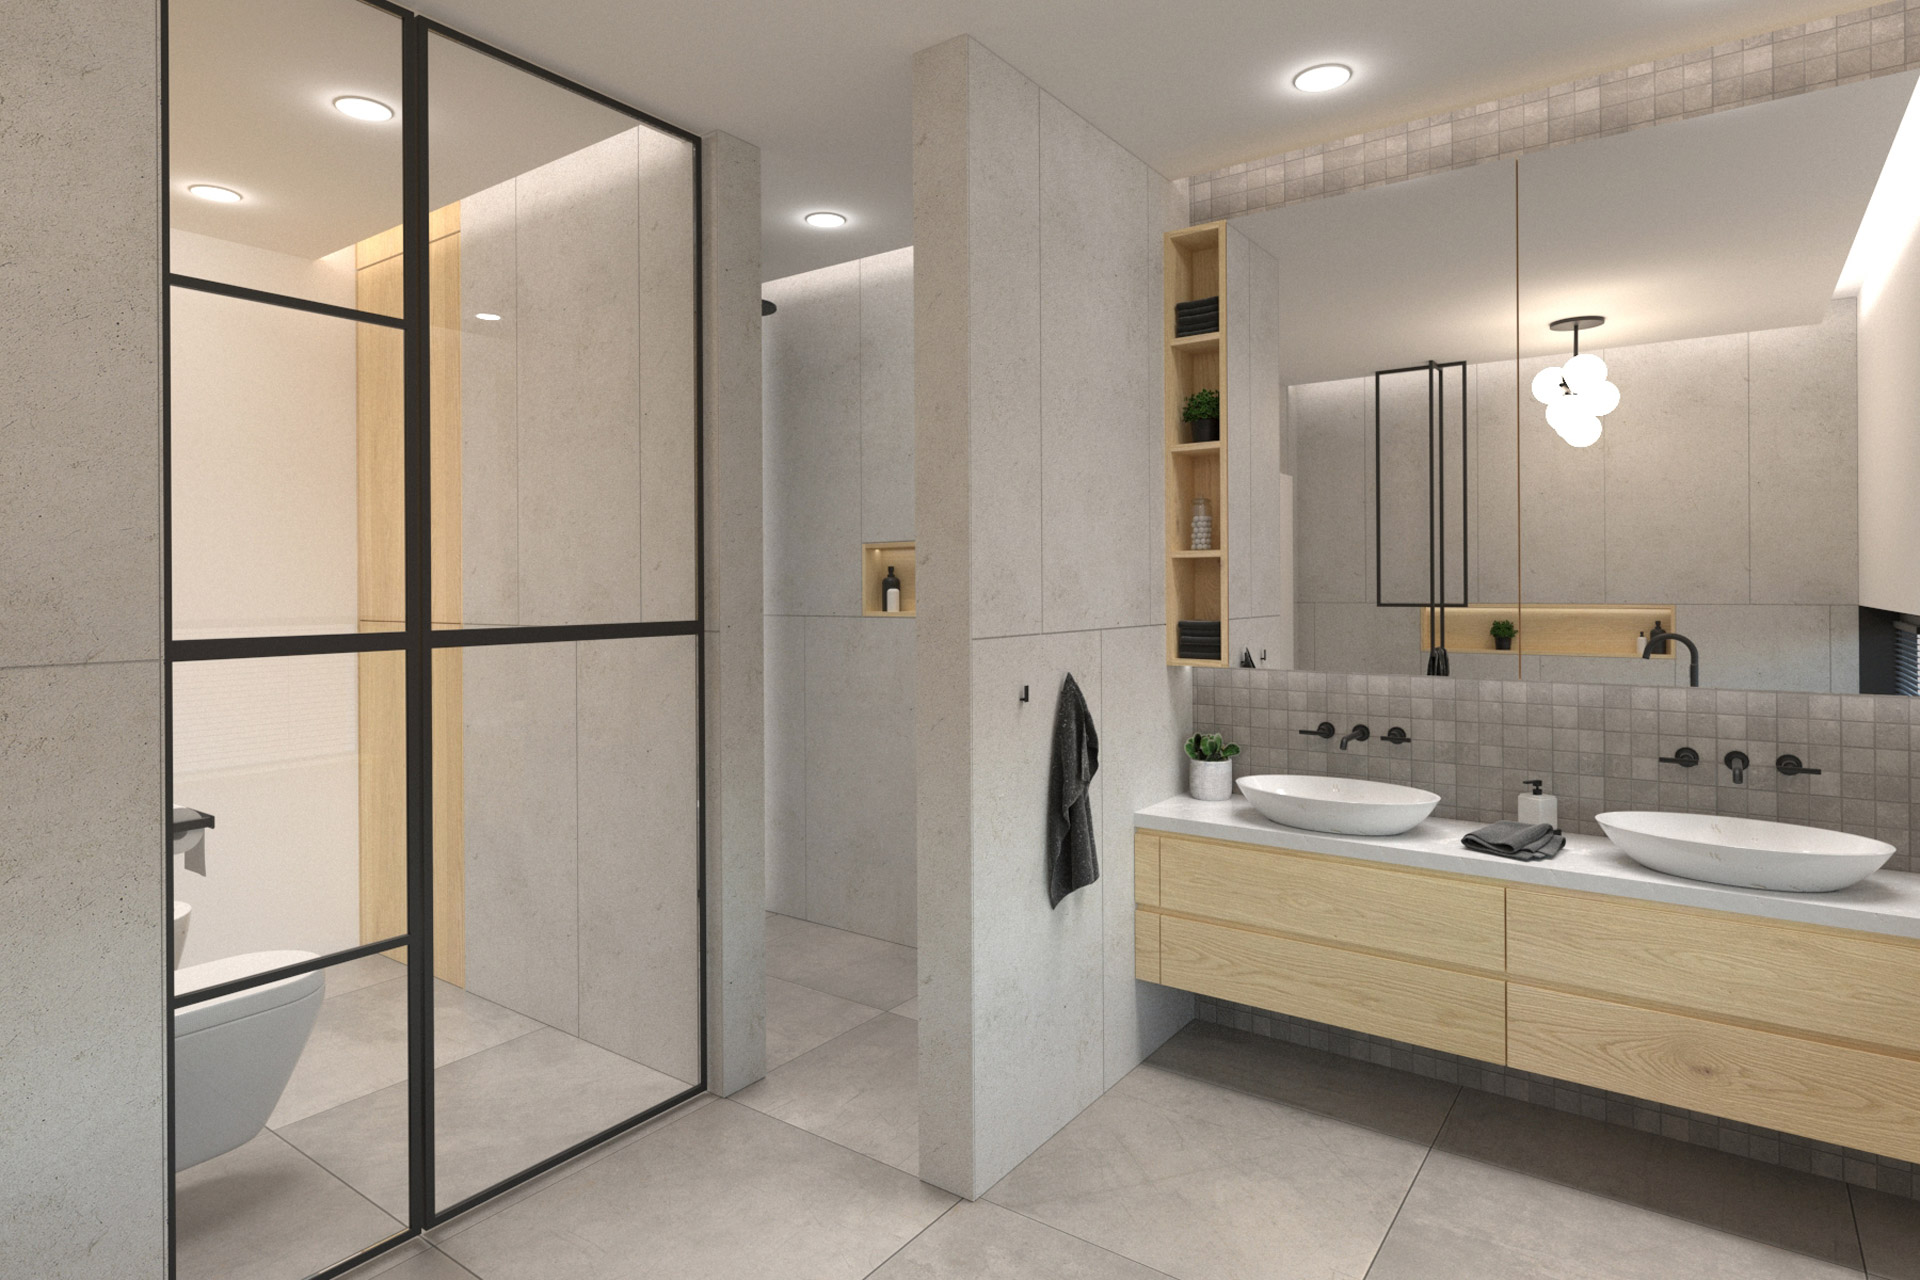 Hanák Návrh moderného interiéru Kúpeľňa